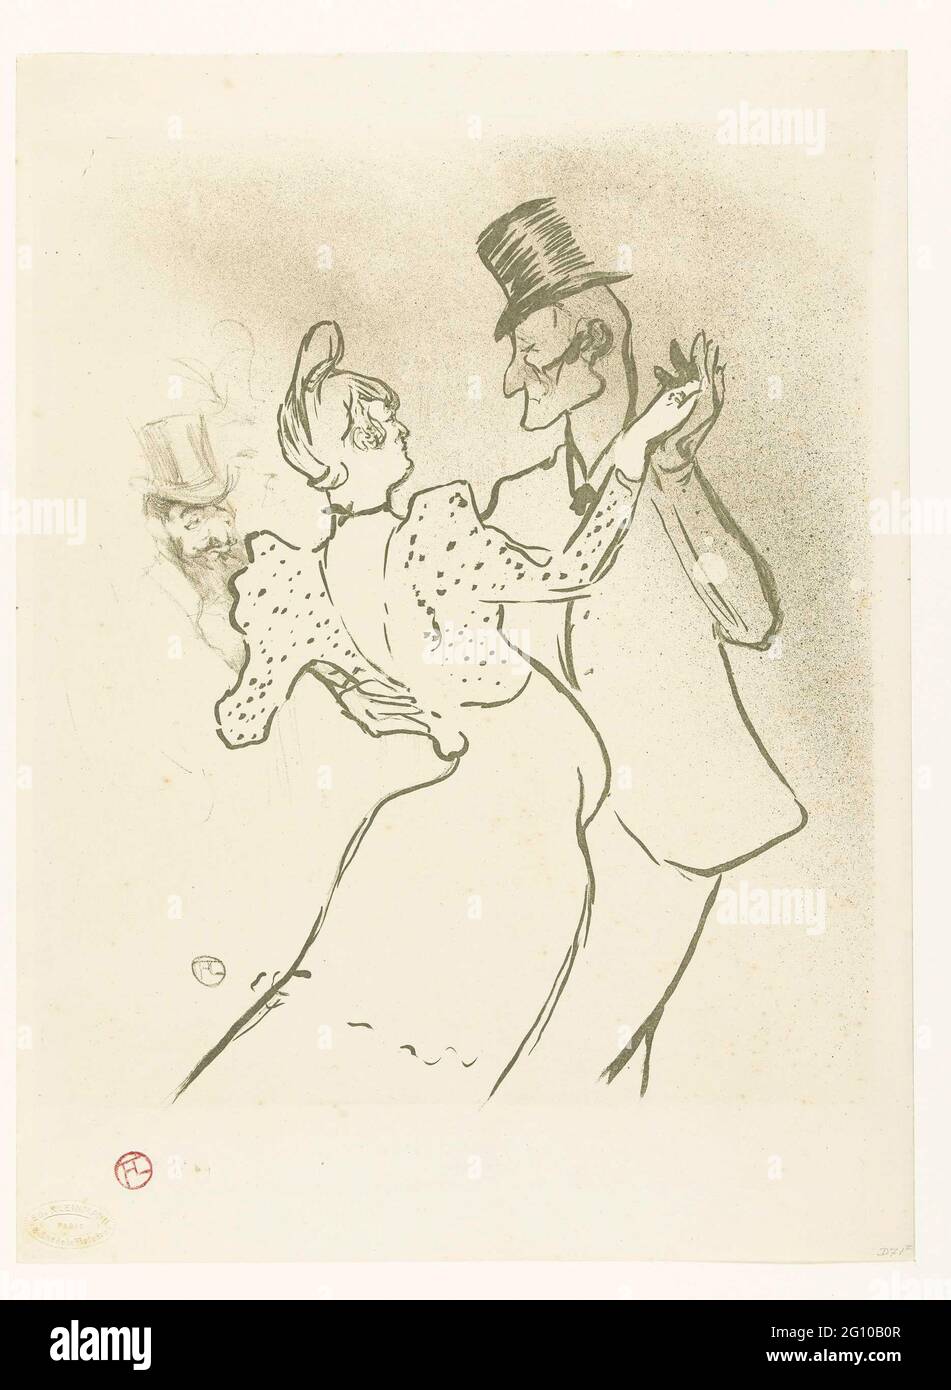 Le danseur la Goulu et Valentin le Désossé dansant au Moulin Rouge. La danseuse Louise Weber, connue sous le nom de la Goulu, danse avec Jacques Renaudin, connue sous le nom de Valentin le Désossé au Moulin Rouge. En arrière-plan comme spectateur probablement un autoportrait de Toulouse-Lautrec. Banque D'Images